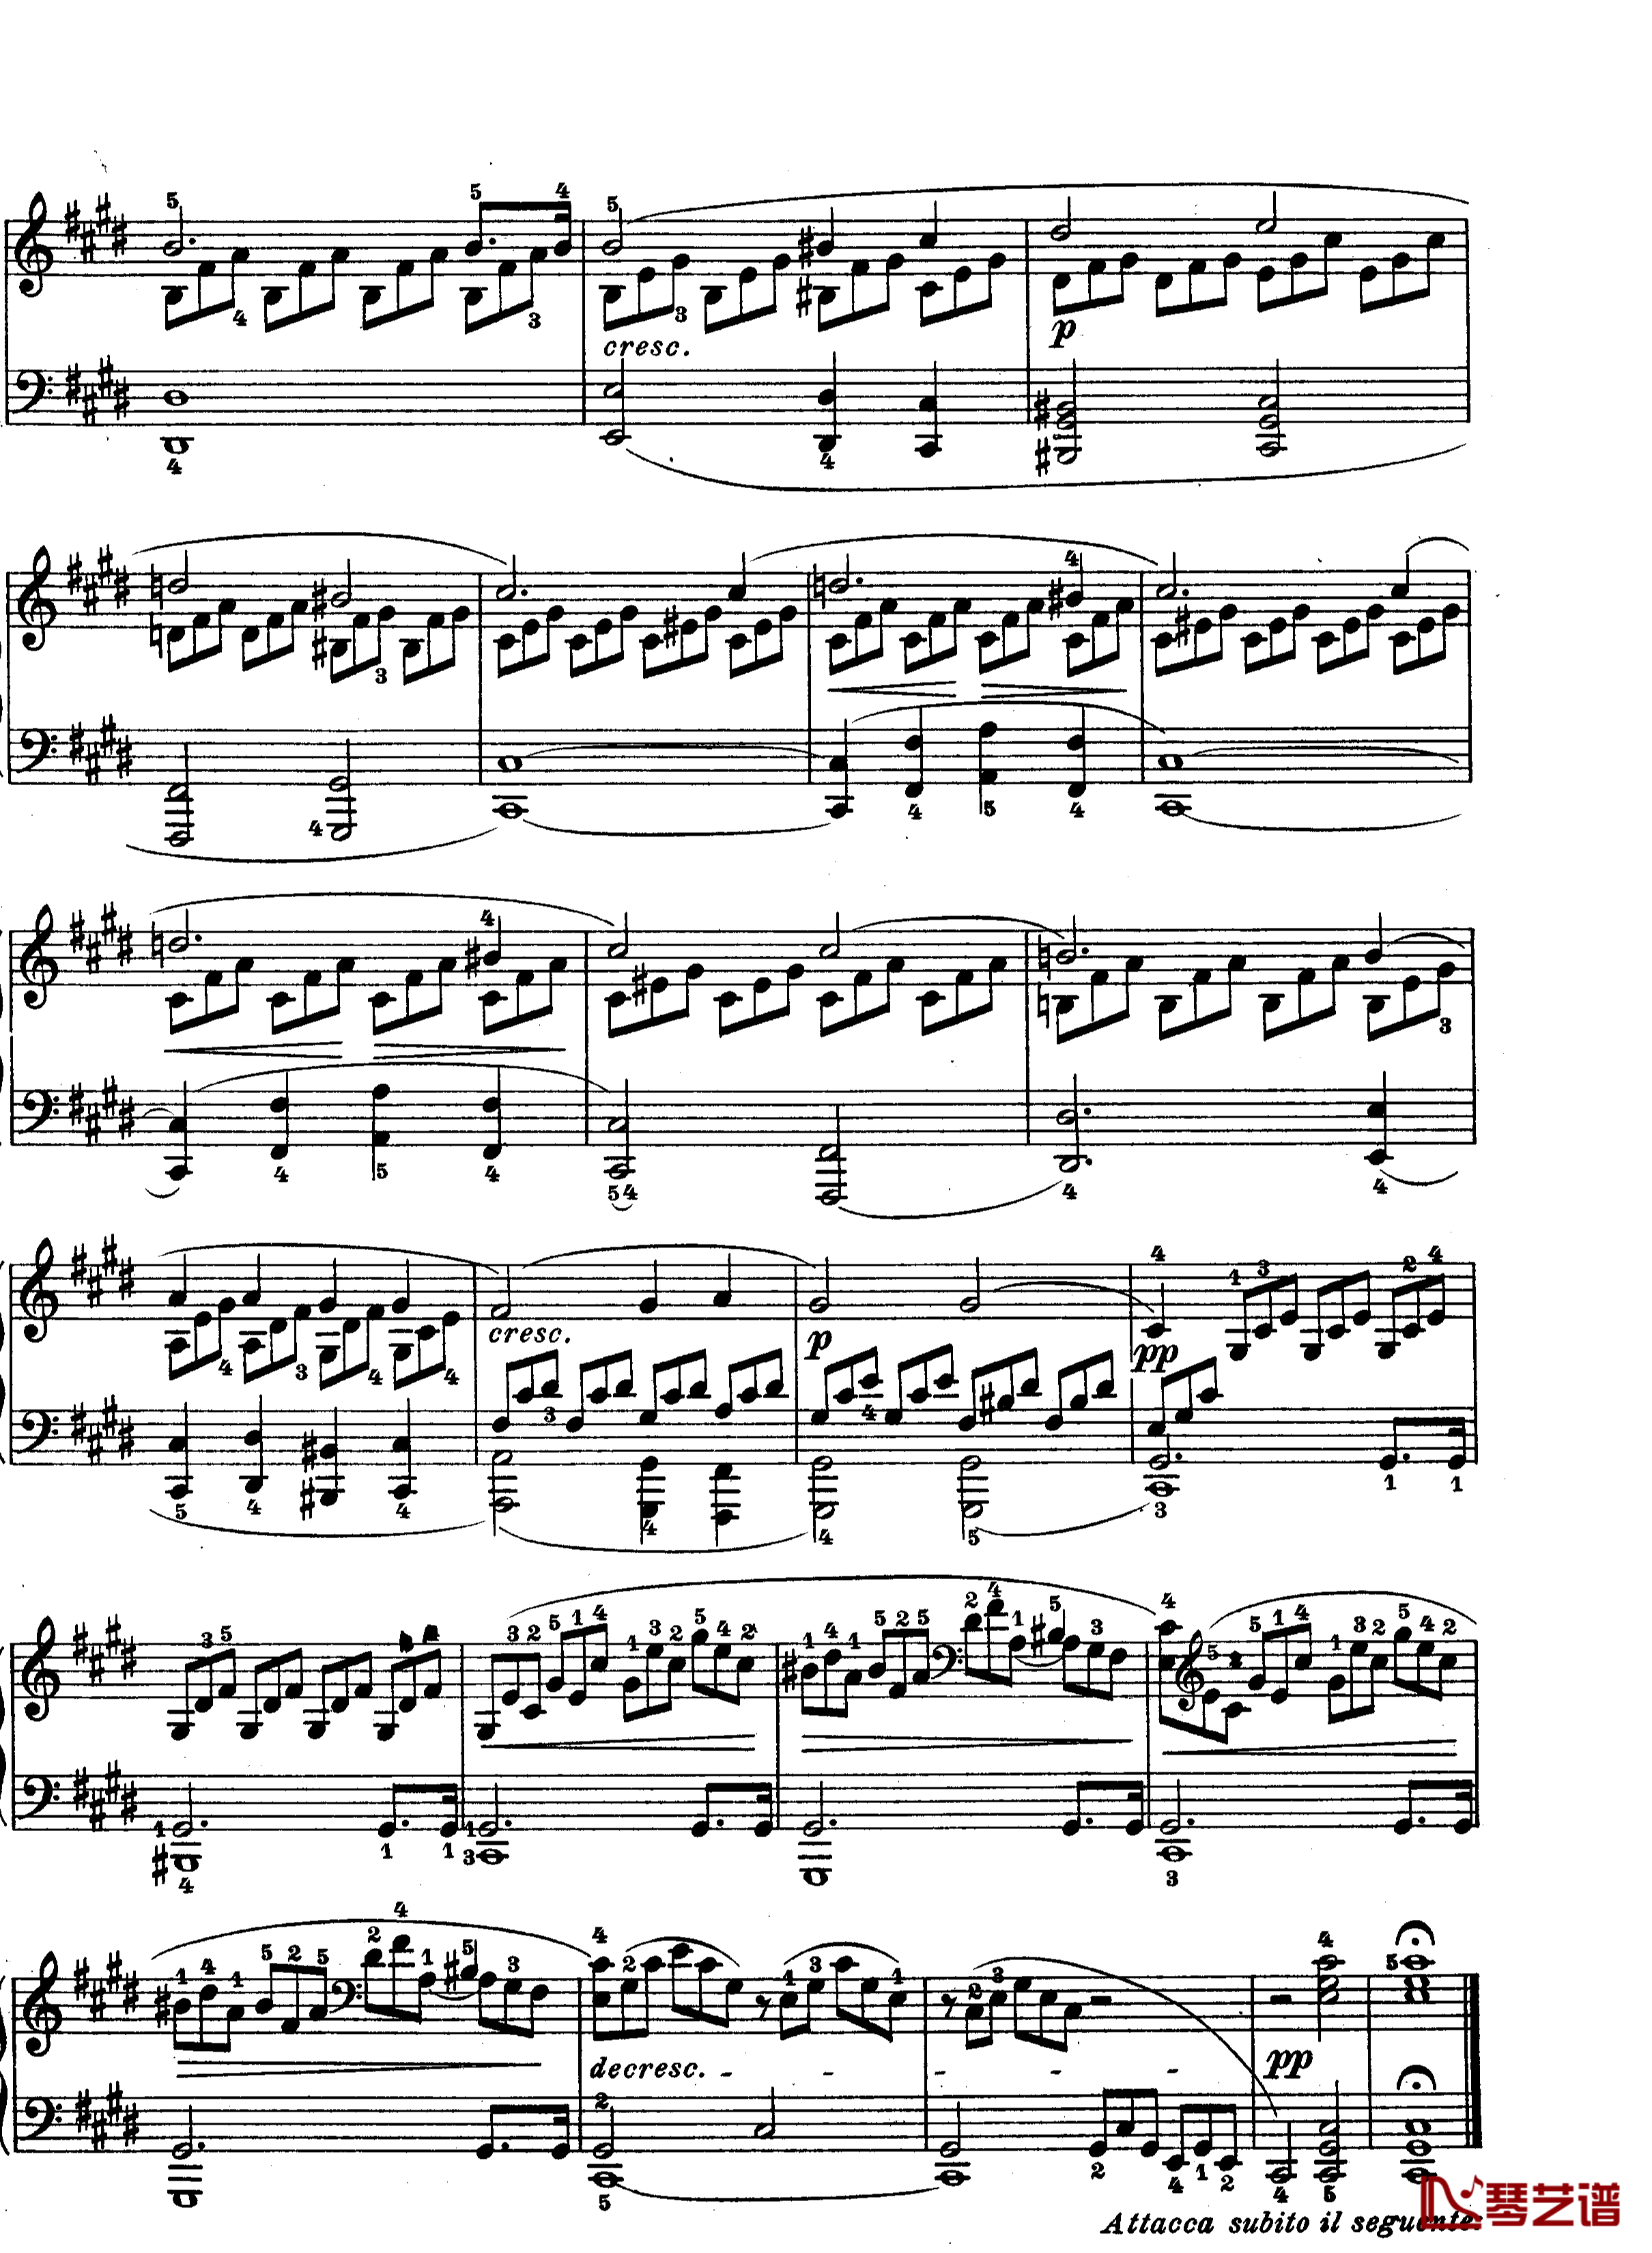 月光曲钢琴谱-第十四钢琴奏鸣曲-Op.27 No.2-贝多芬-beethoven3